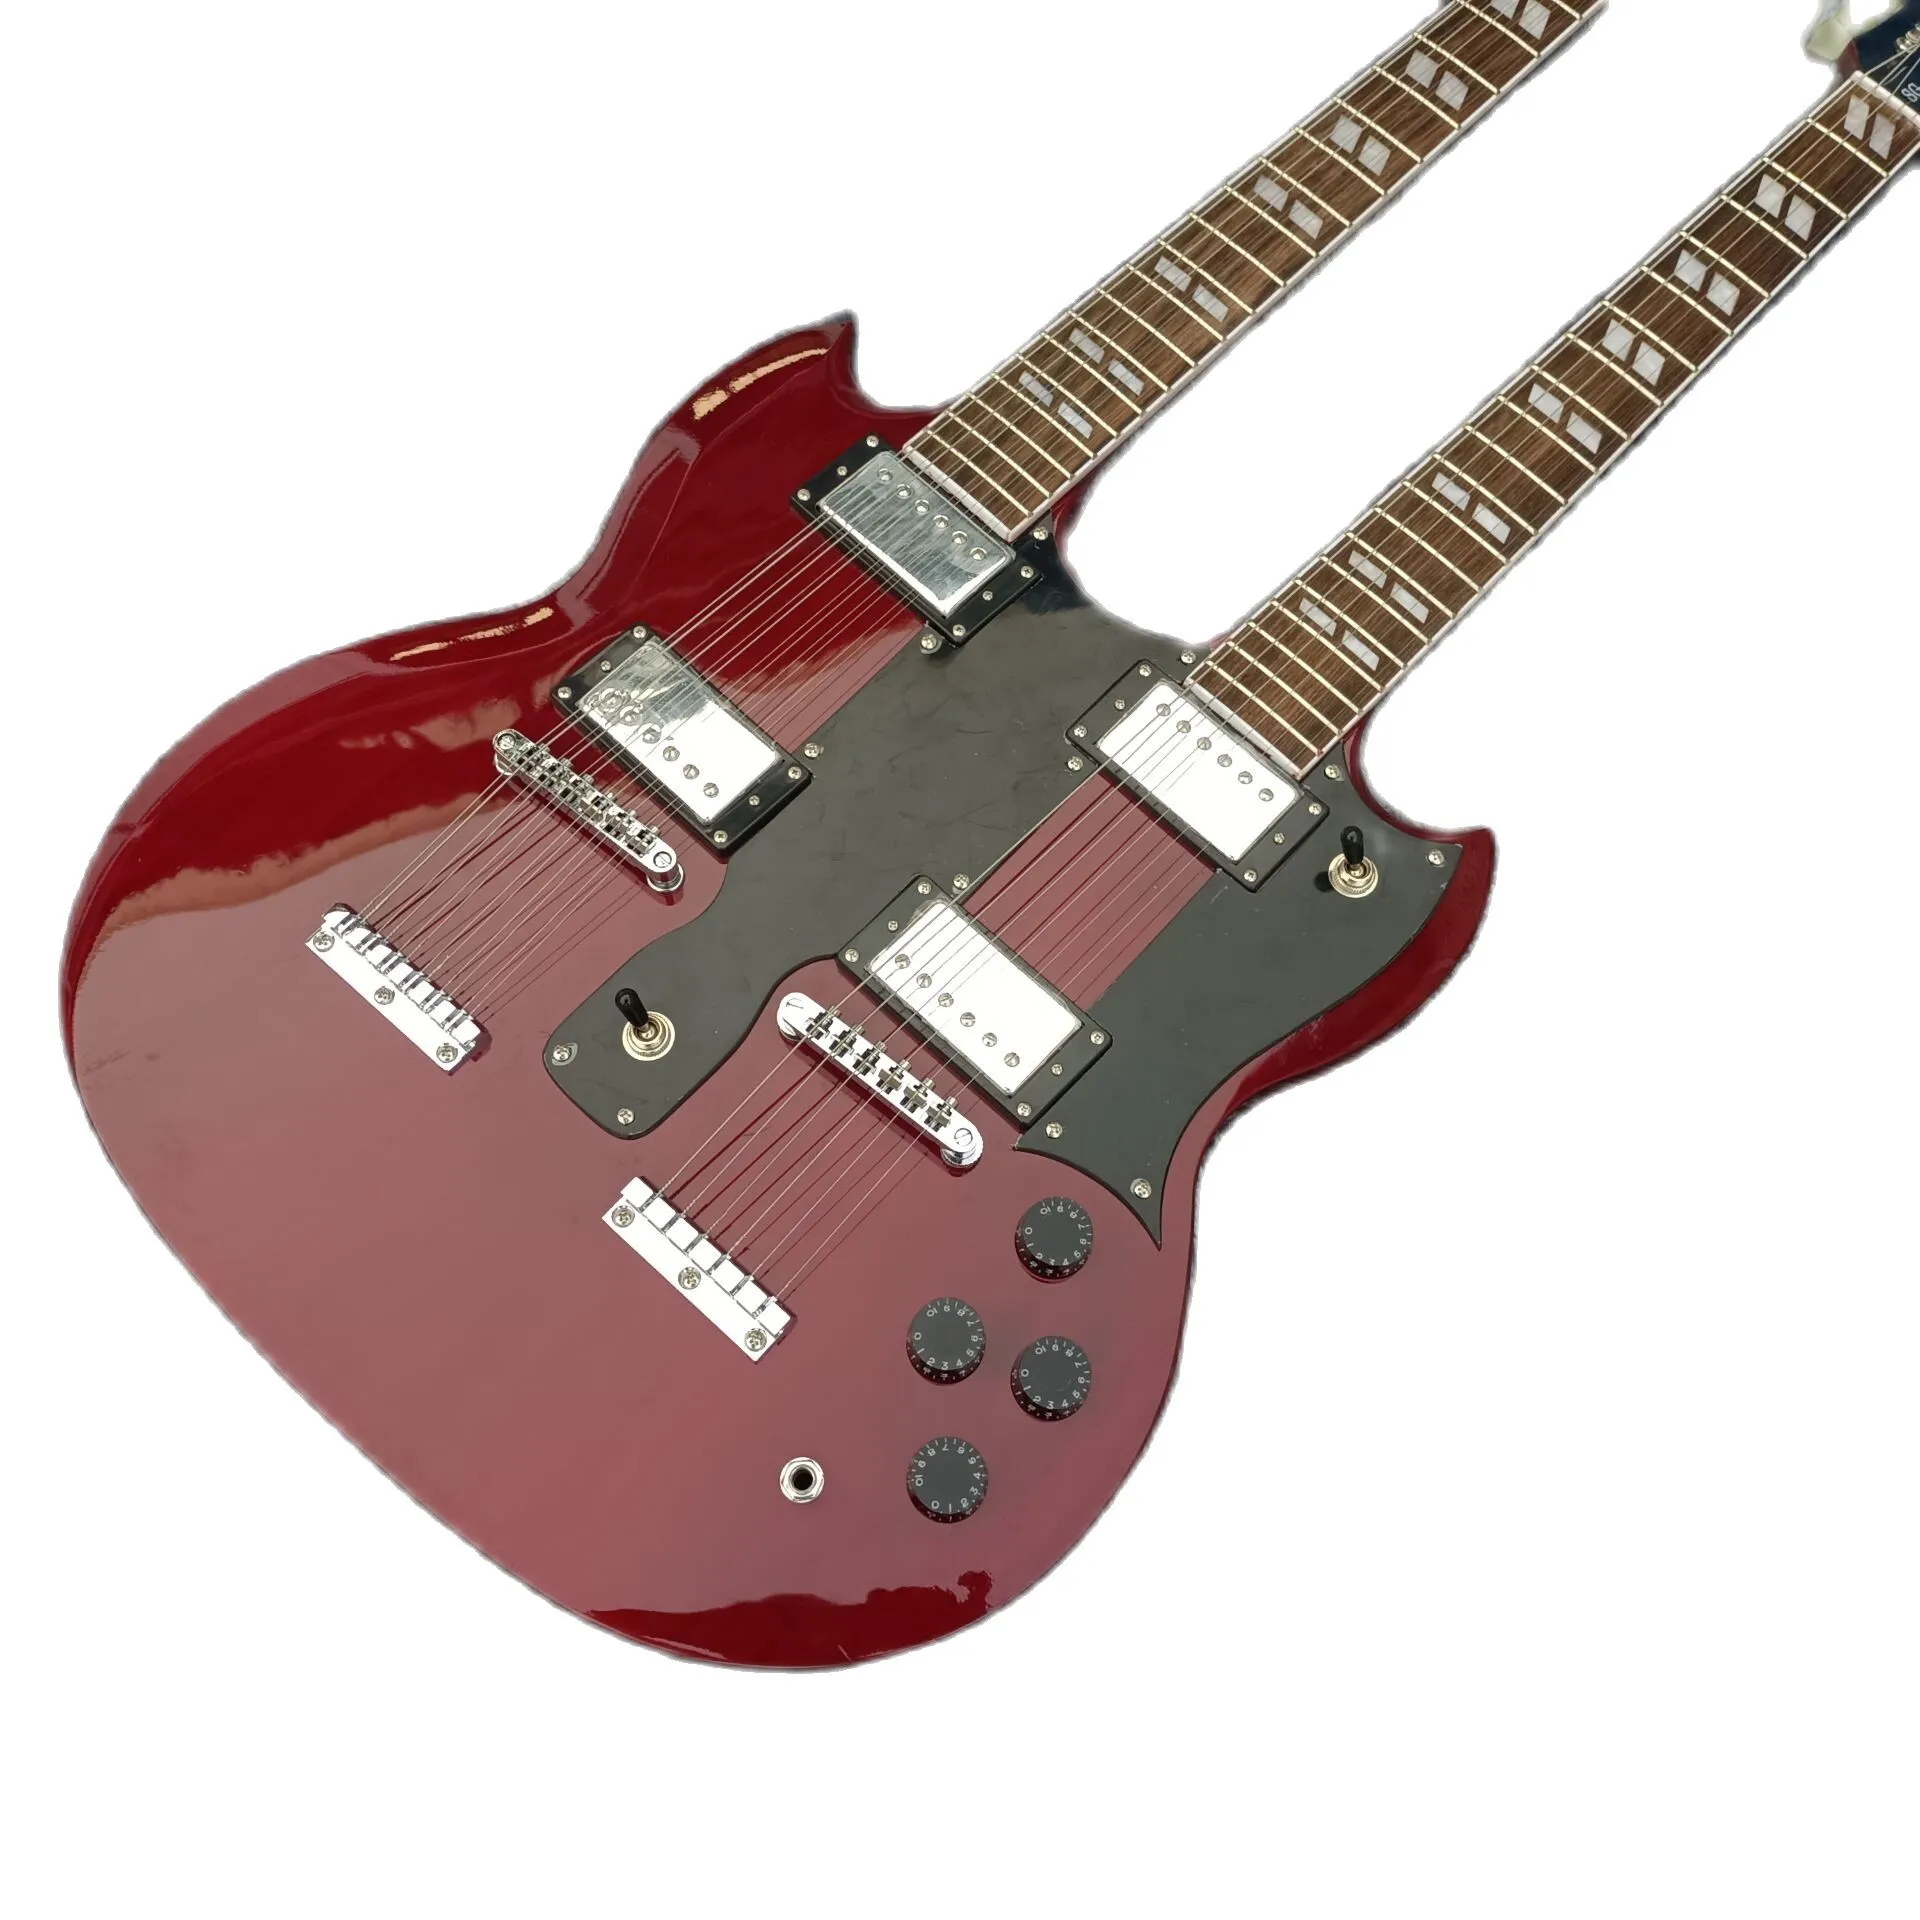 Lvybest E-Gitarre 2021, hochwertiges Niveau, produziert Doppelhälse, weinrote Farbe, schwarzes Schlagbrett, 6 und 12 Saiten Kopfplatte